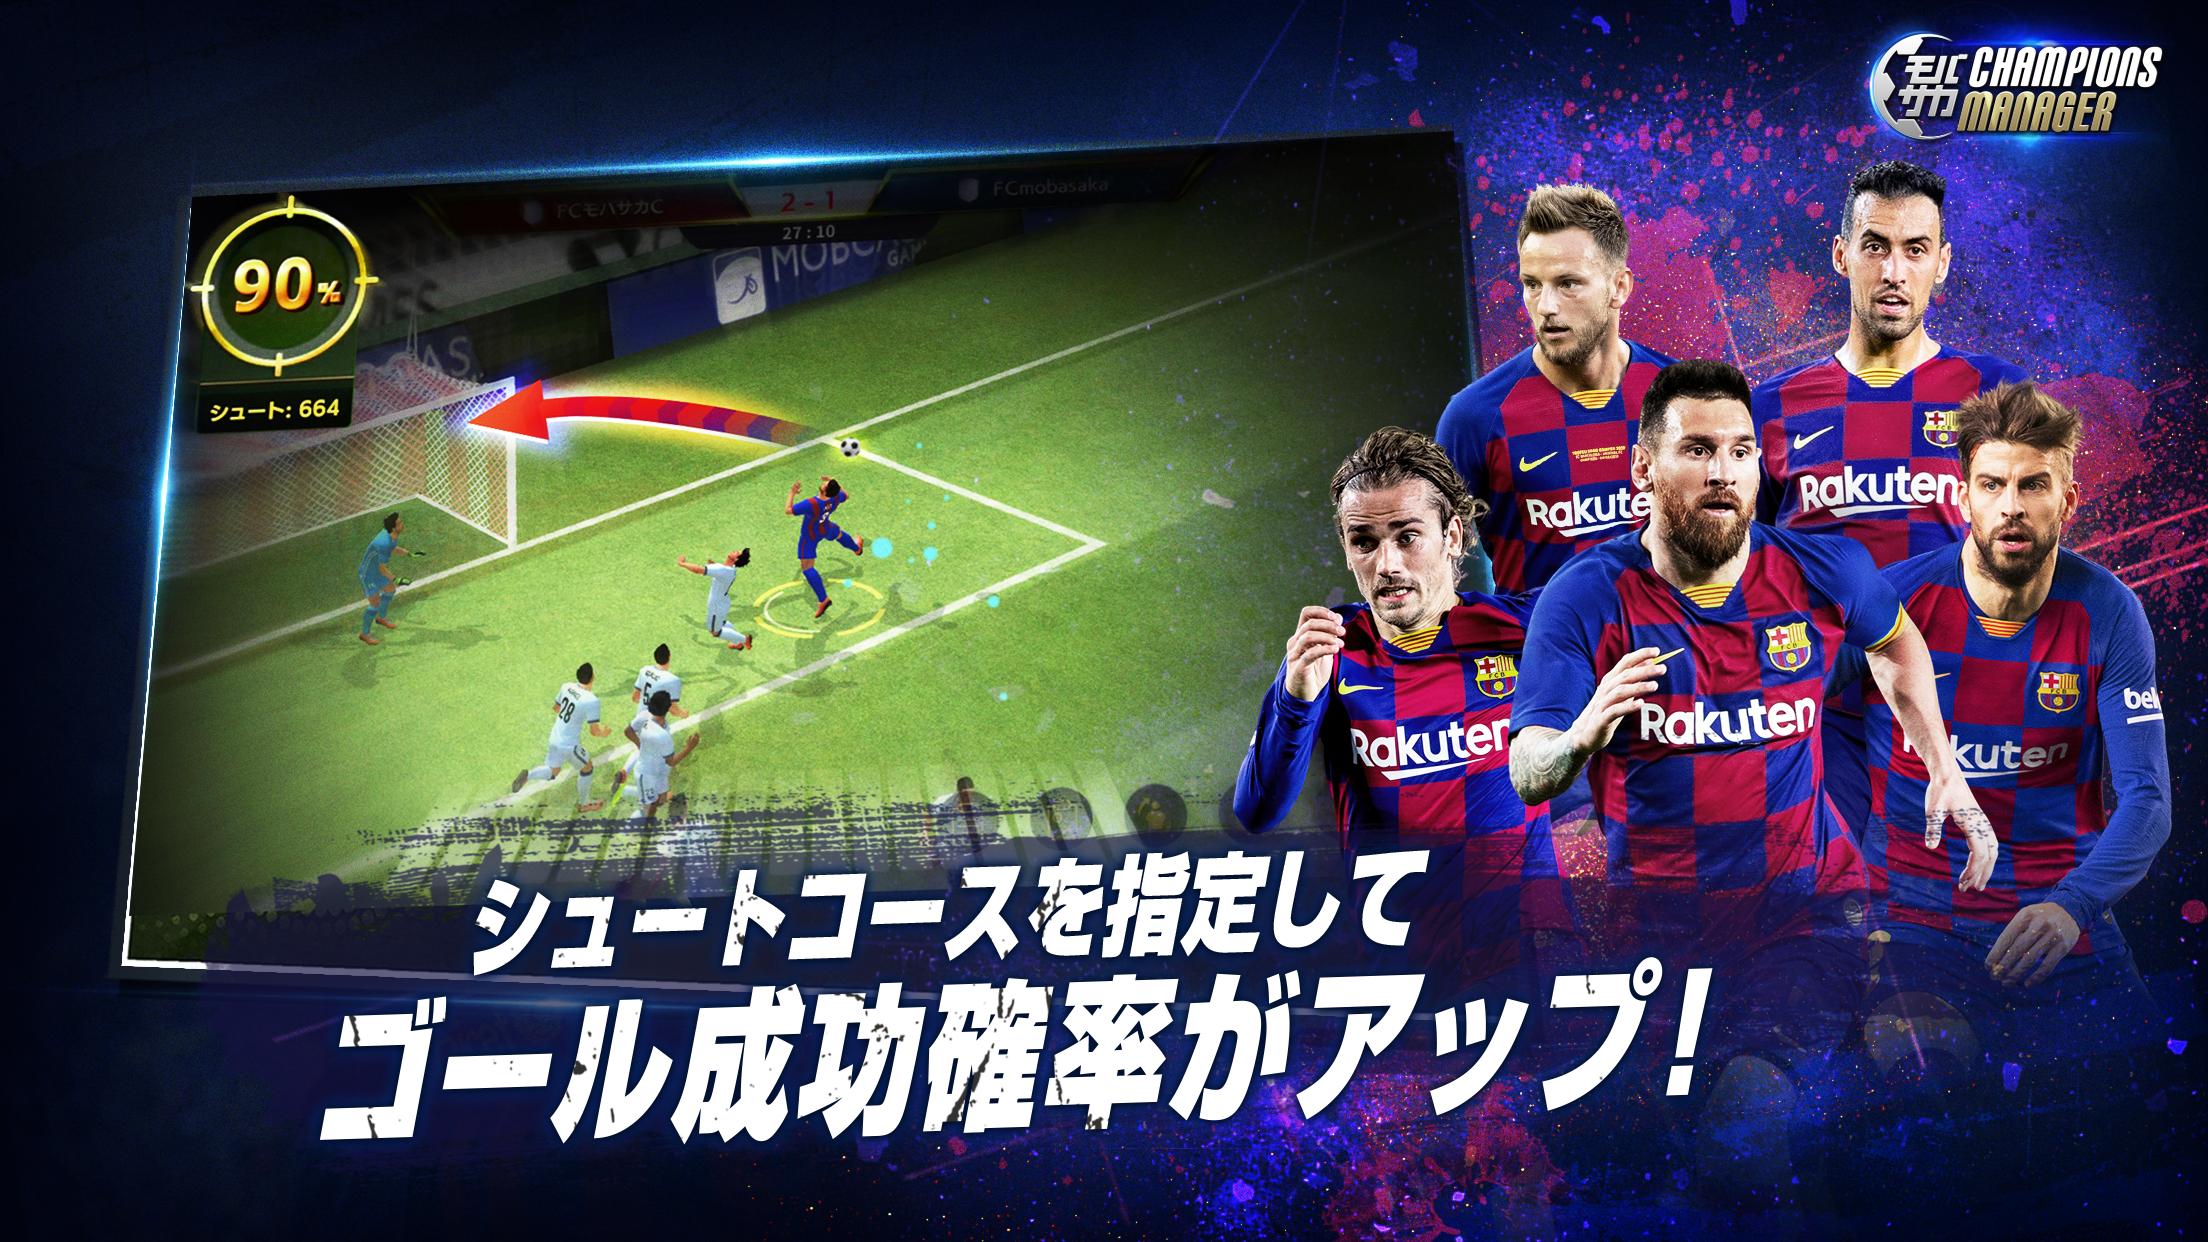 モバサカ Champions Manager 決断するサッカーゲーム For Android Apk Download